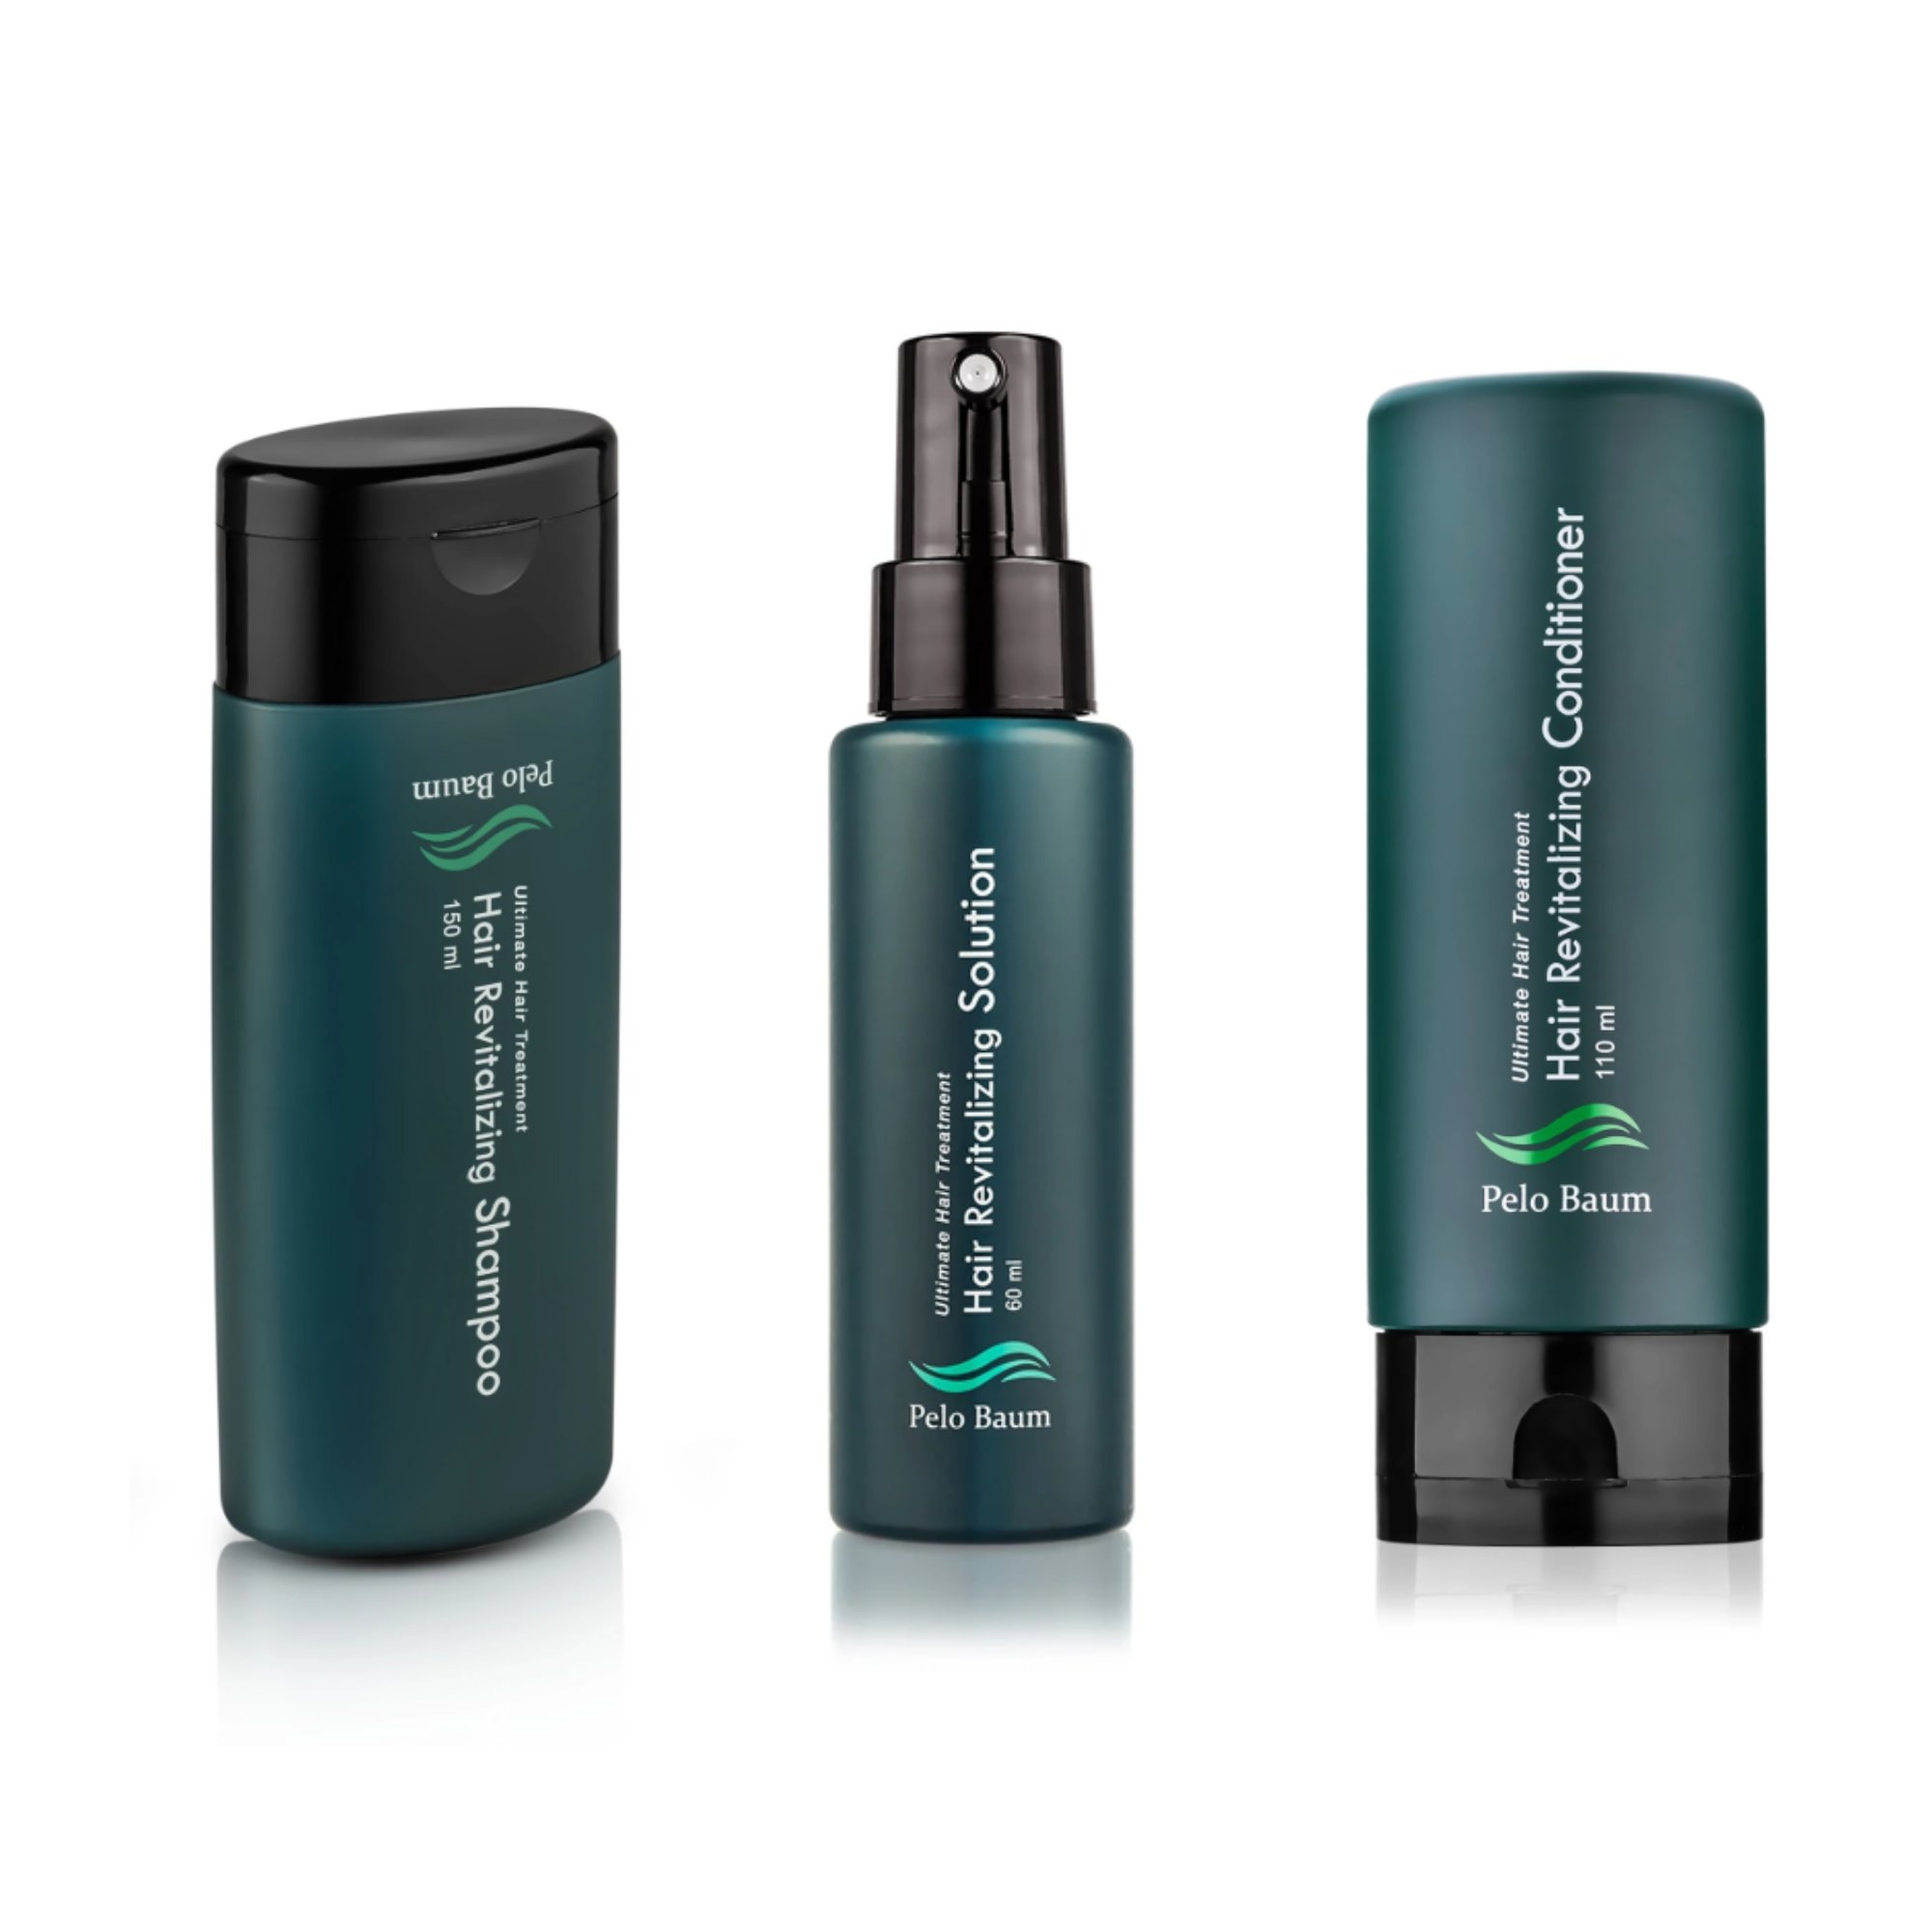 Balíček proti vypadávání vlasů: Pelo Baum sérum + šampon + kondicionér